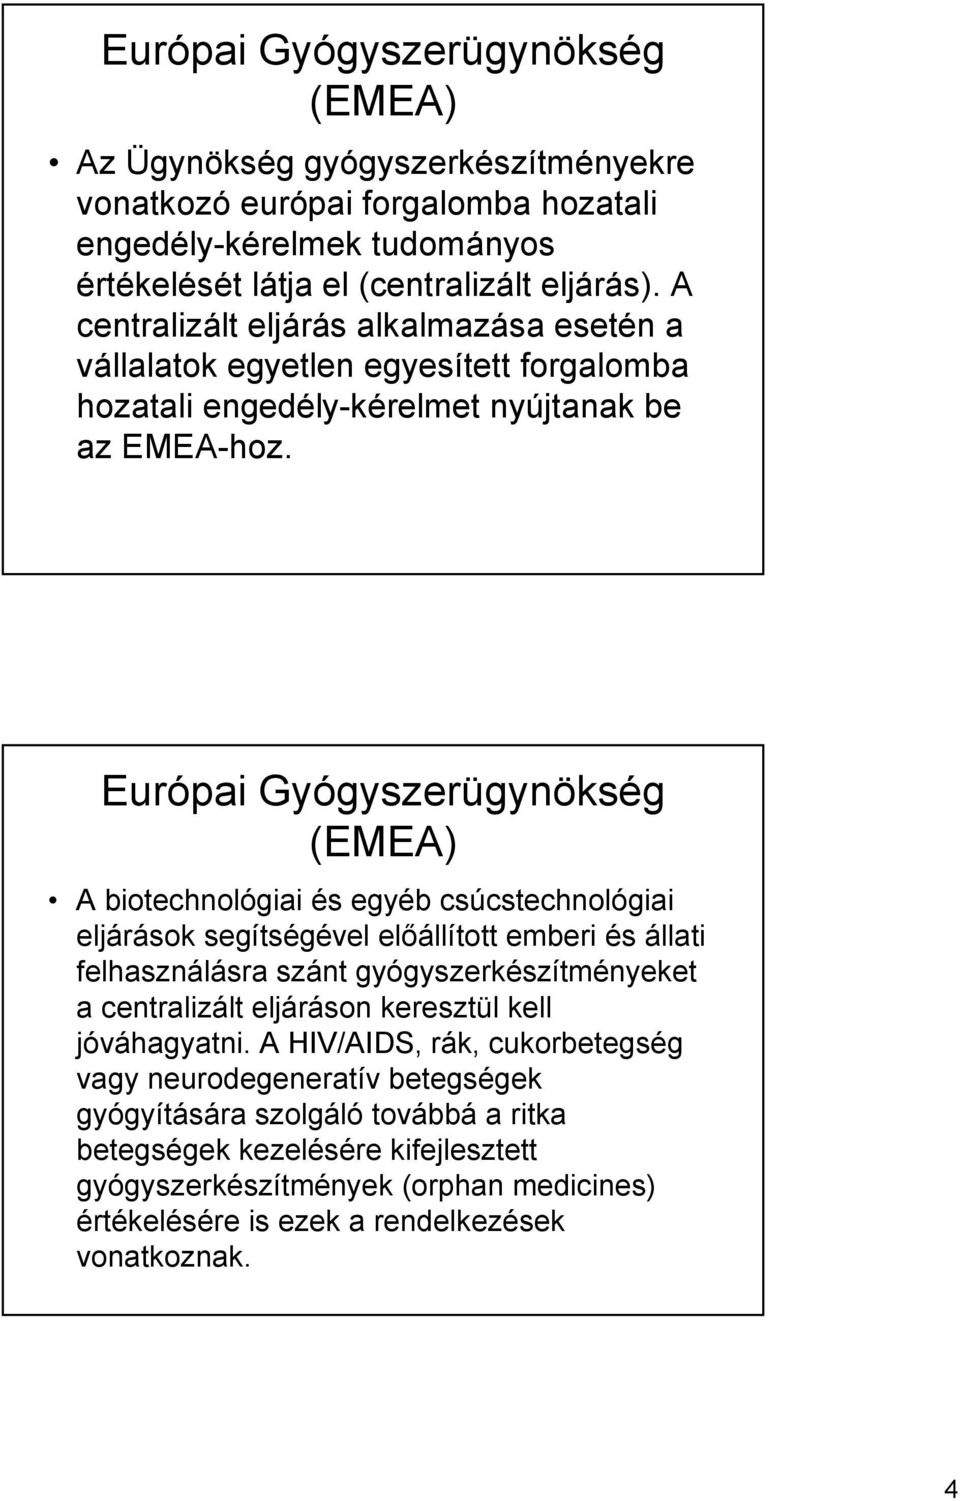 Európai Gyógyszerügynökség (EMEA) A biotechnológiai és egyéb csúcstechnológiai eljárások segítségével előállított emberi és állati felhasználásra szánt gyógyszerkészítményeket a centralizált